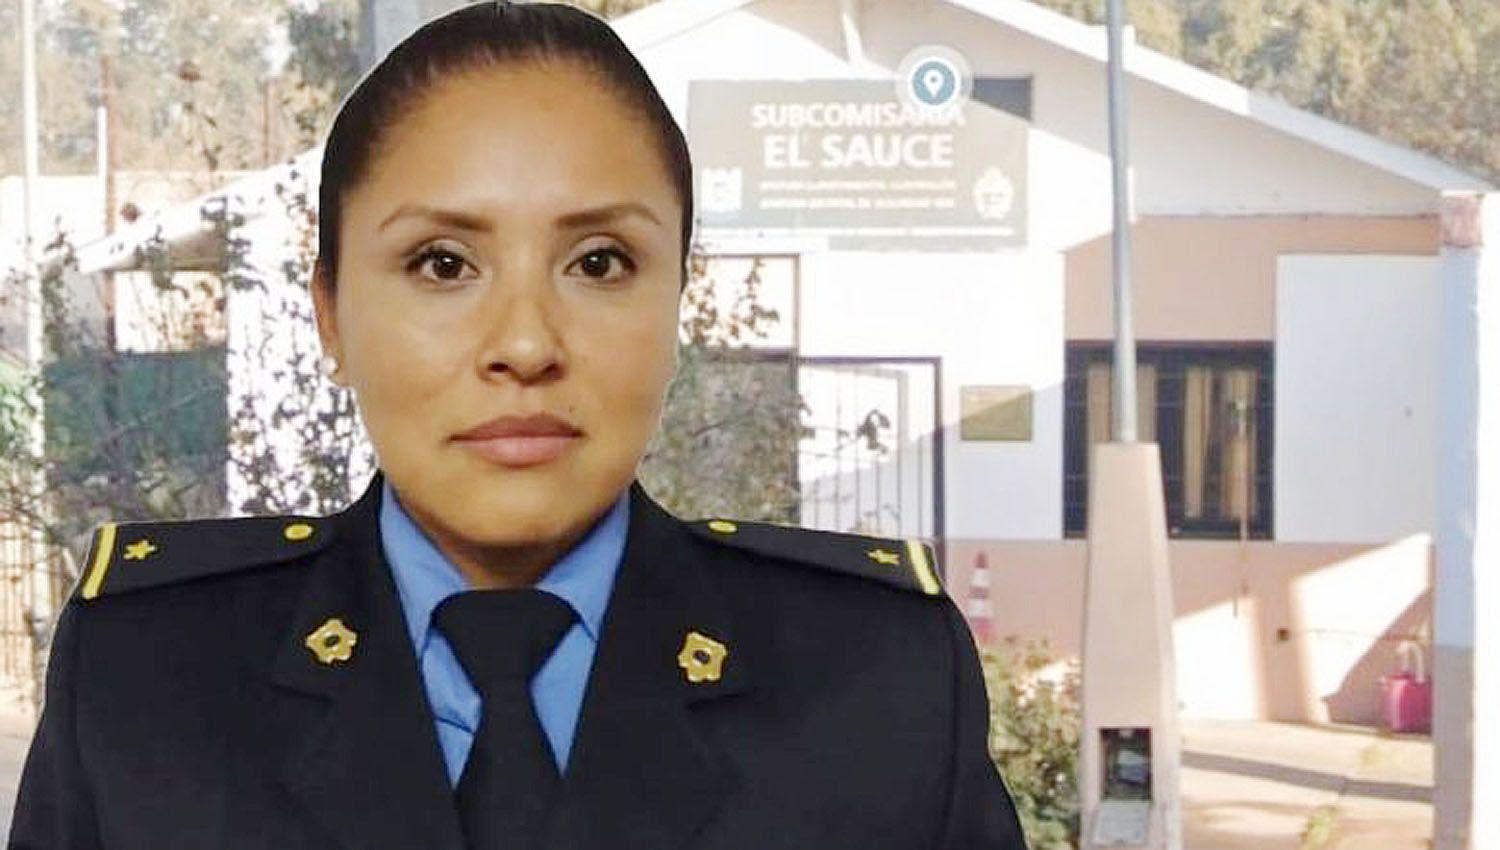  La víctima (foto) fue encontrada sin vida dentro de la subcomisaría de El Sauce en Guaymallén